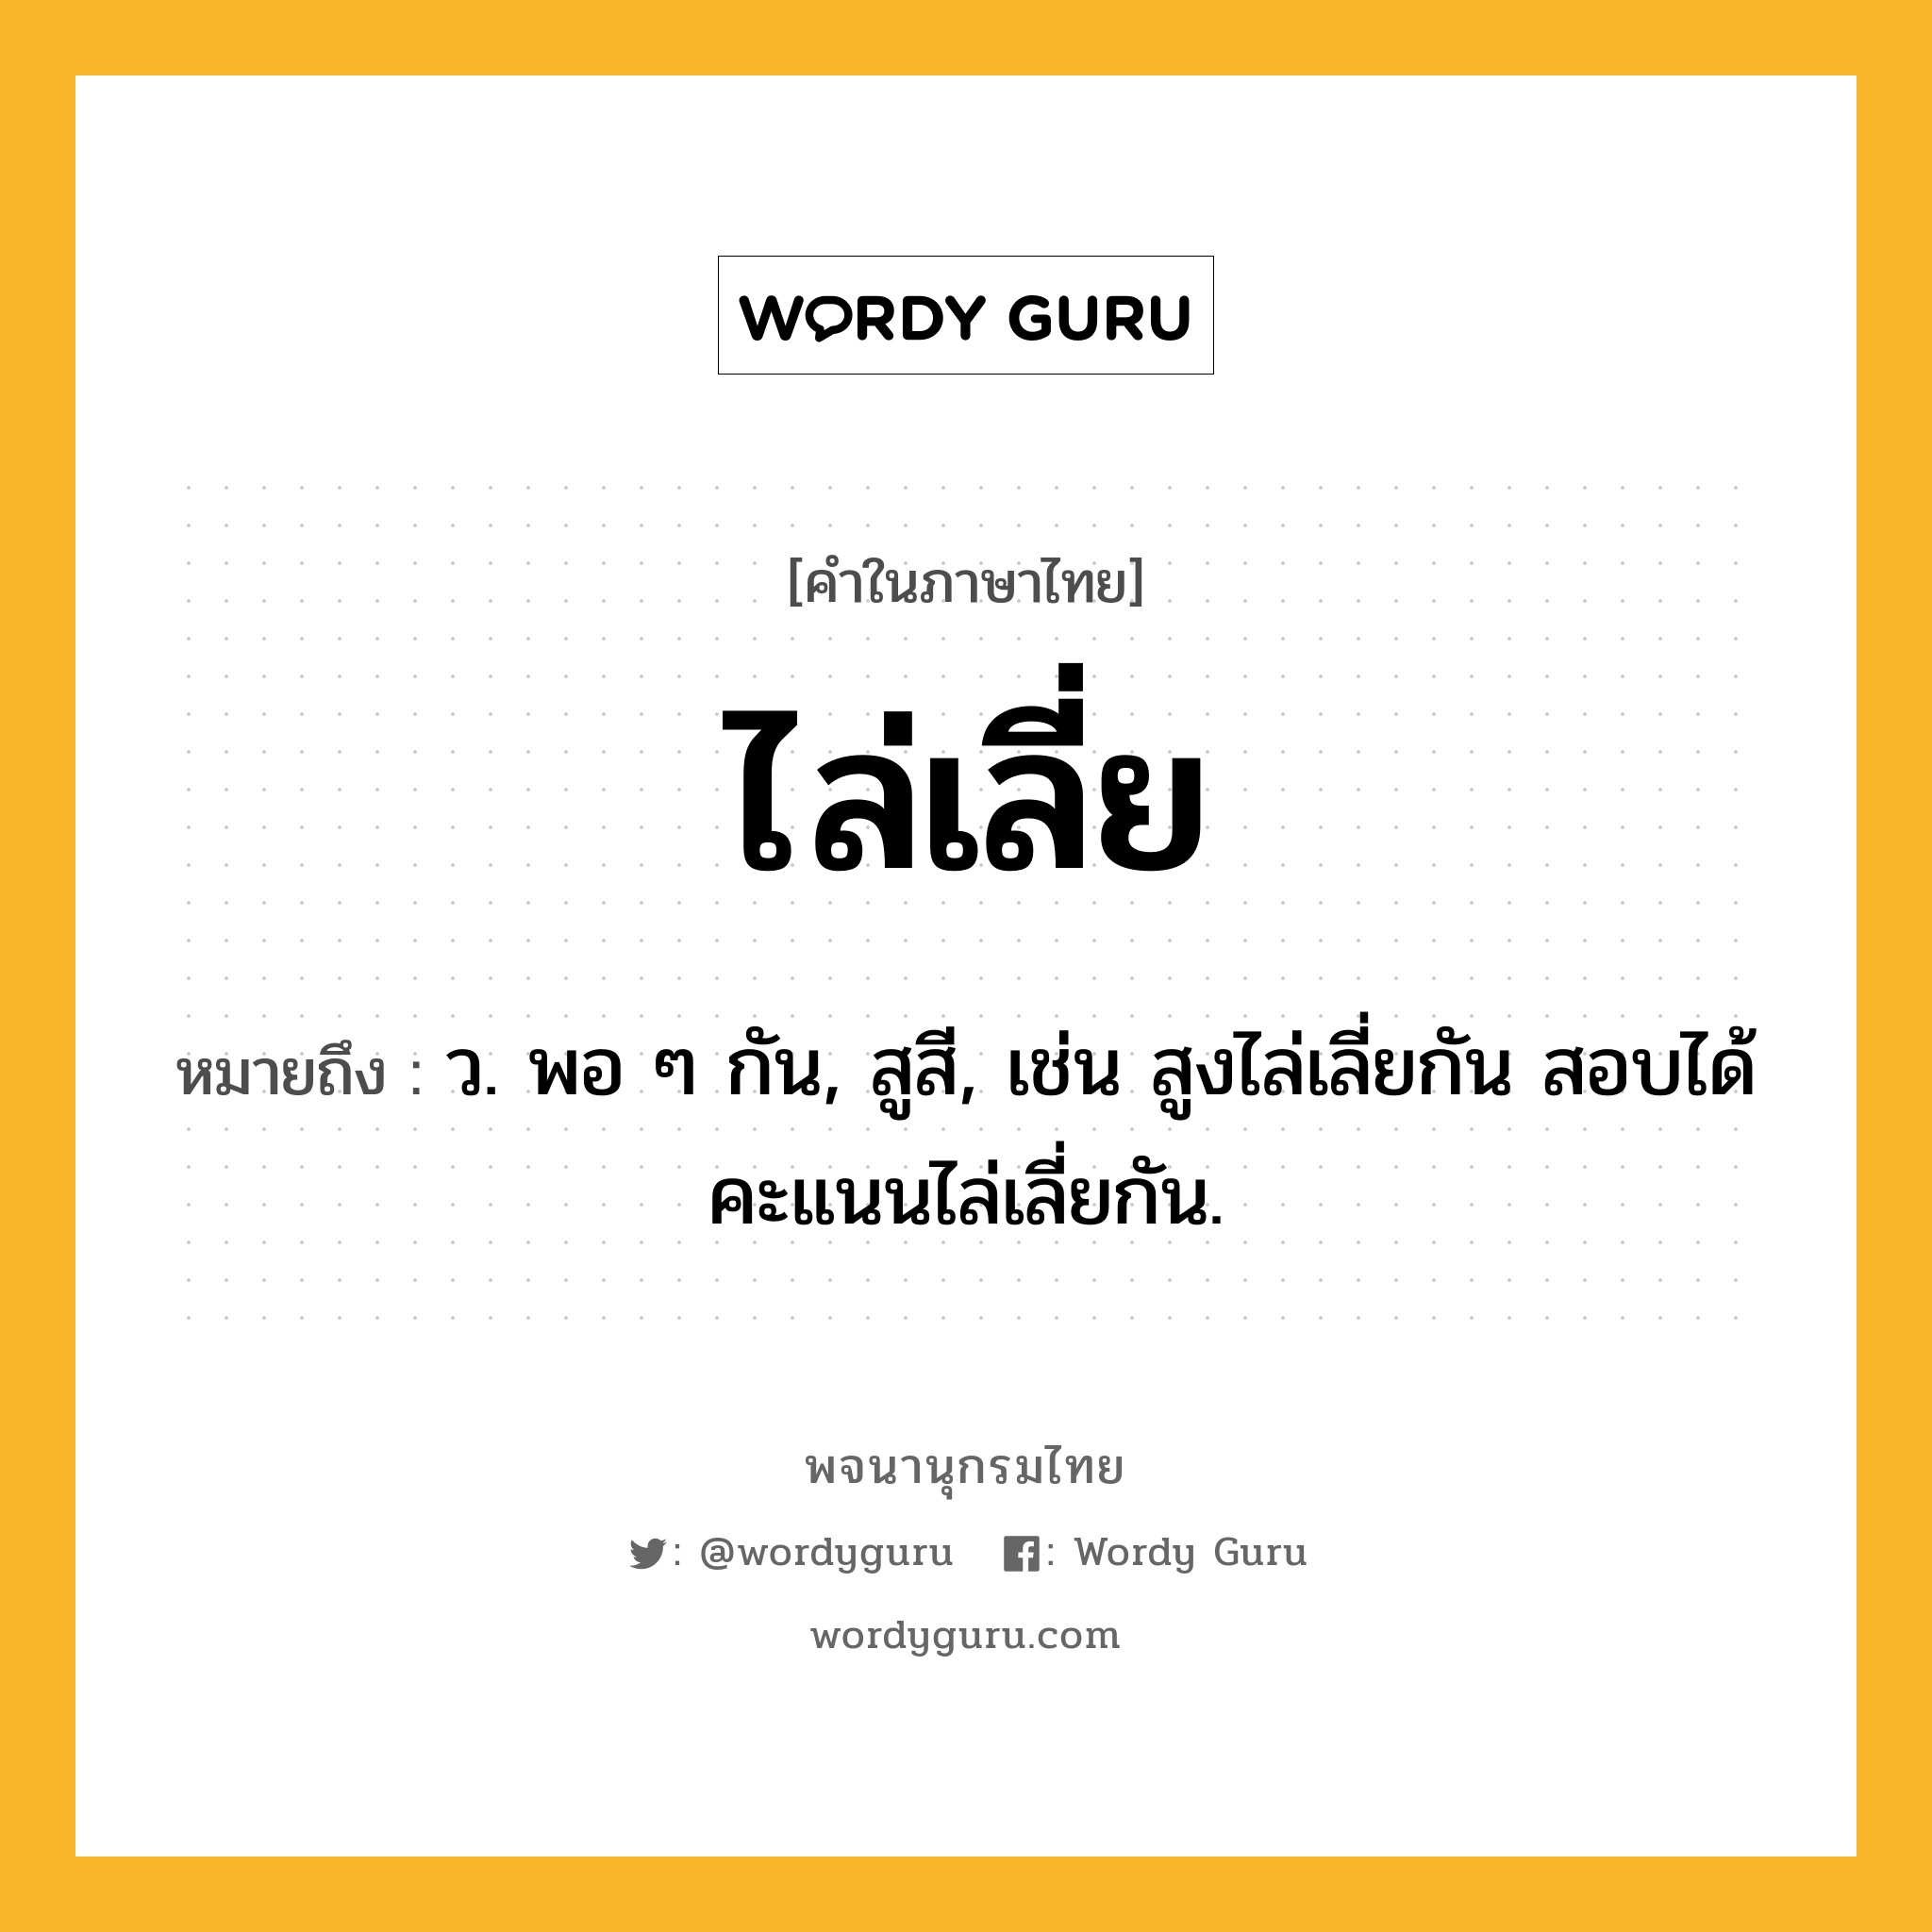 ไล่เลี่ย หมายถึงอะไร?, คำในภาษาไทย ไล่เลี่ย หมายถึง ว. พอ ๆ กัน, สูสี, เช่น สูงไล่เลี่ยกัน สอบได้คะแนนไล่เลี่ยกัน.